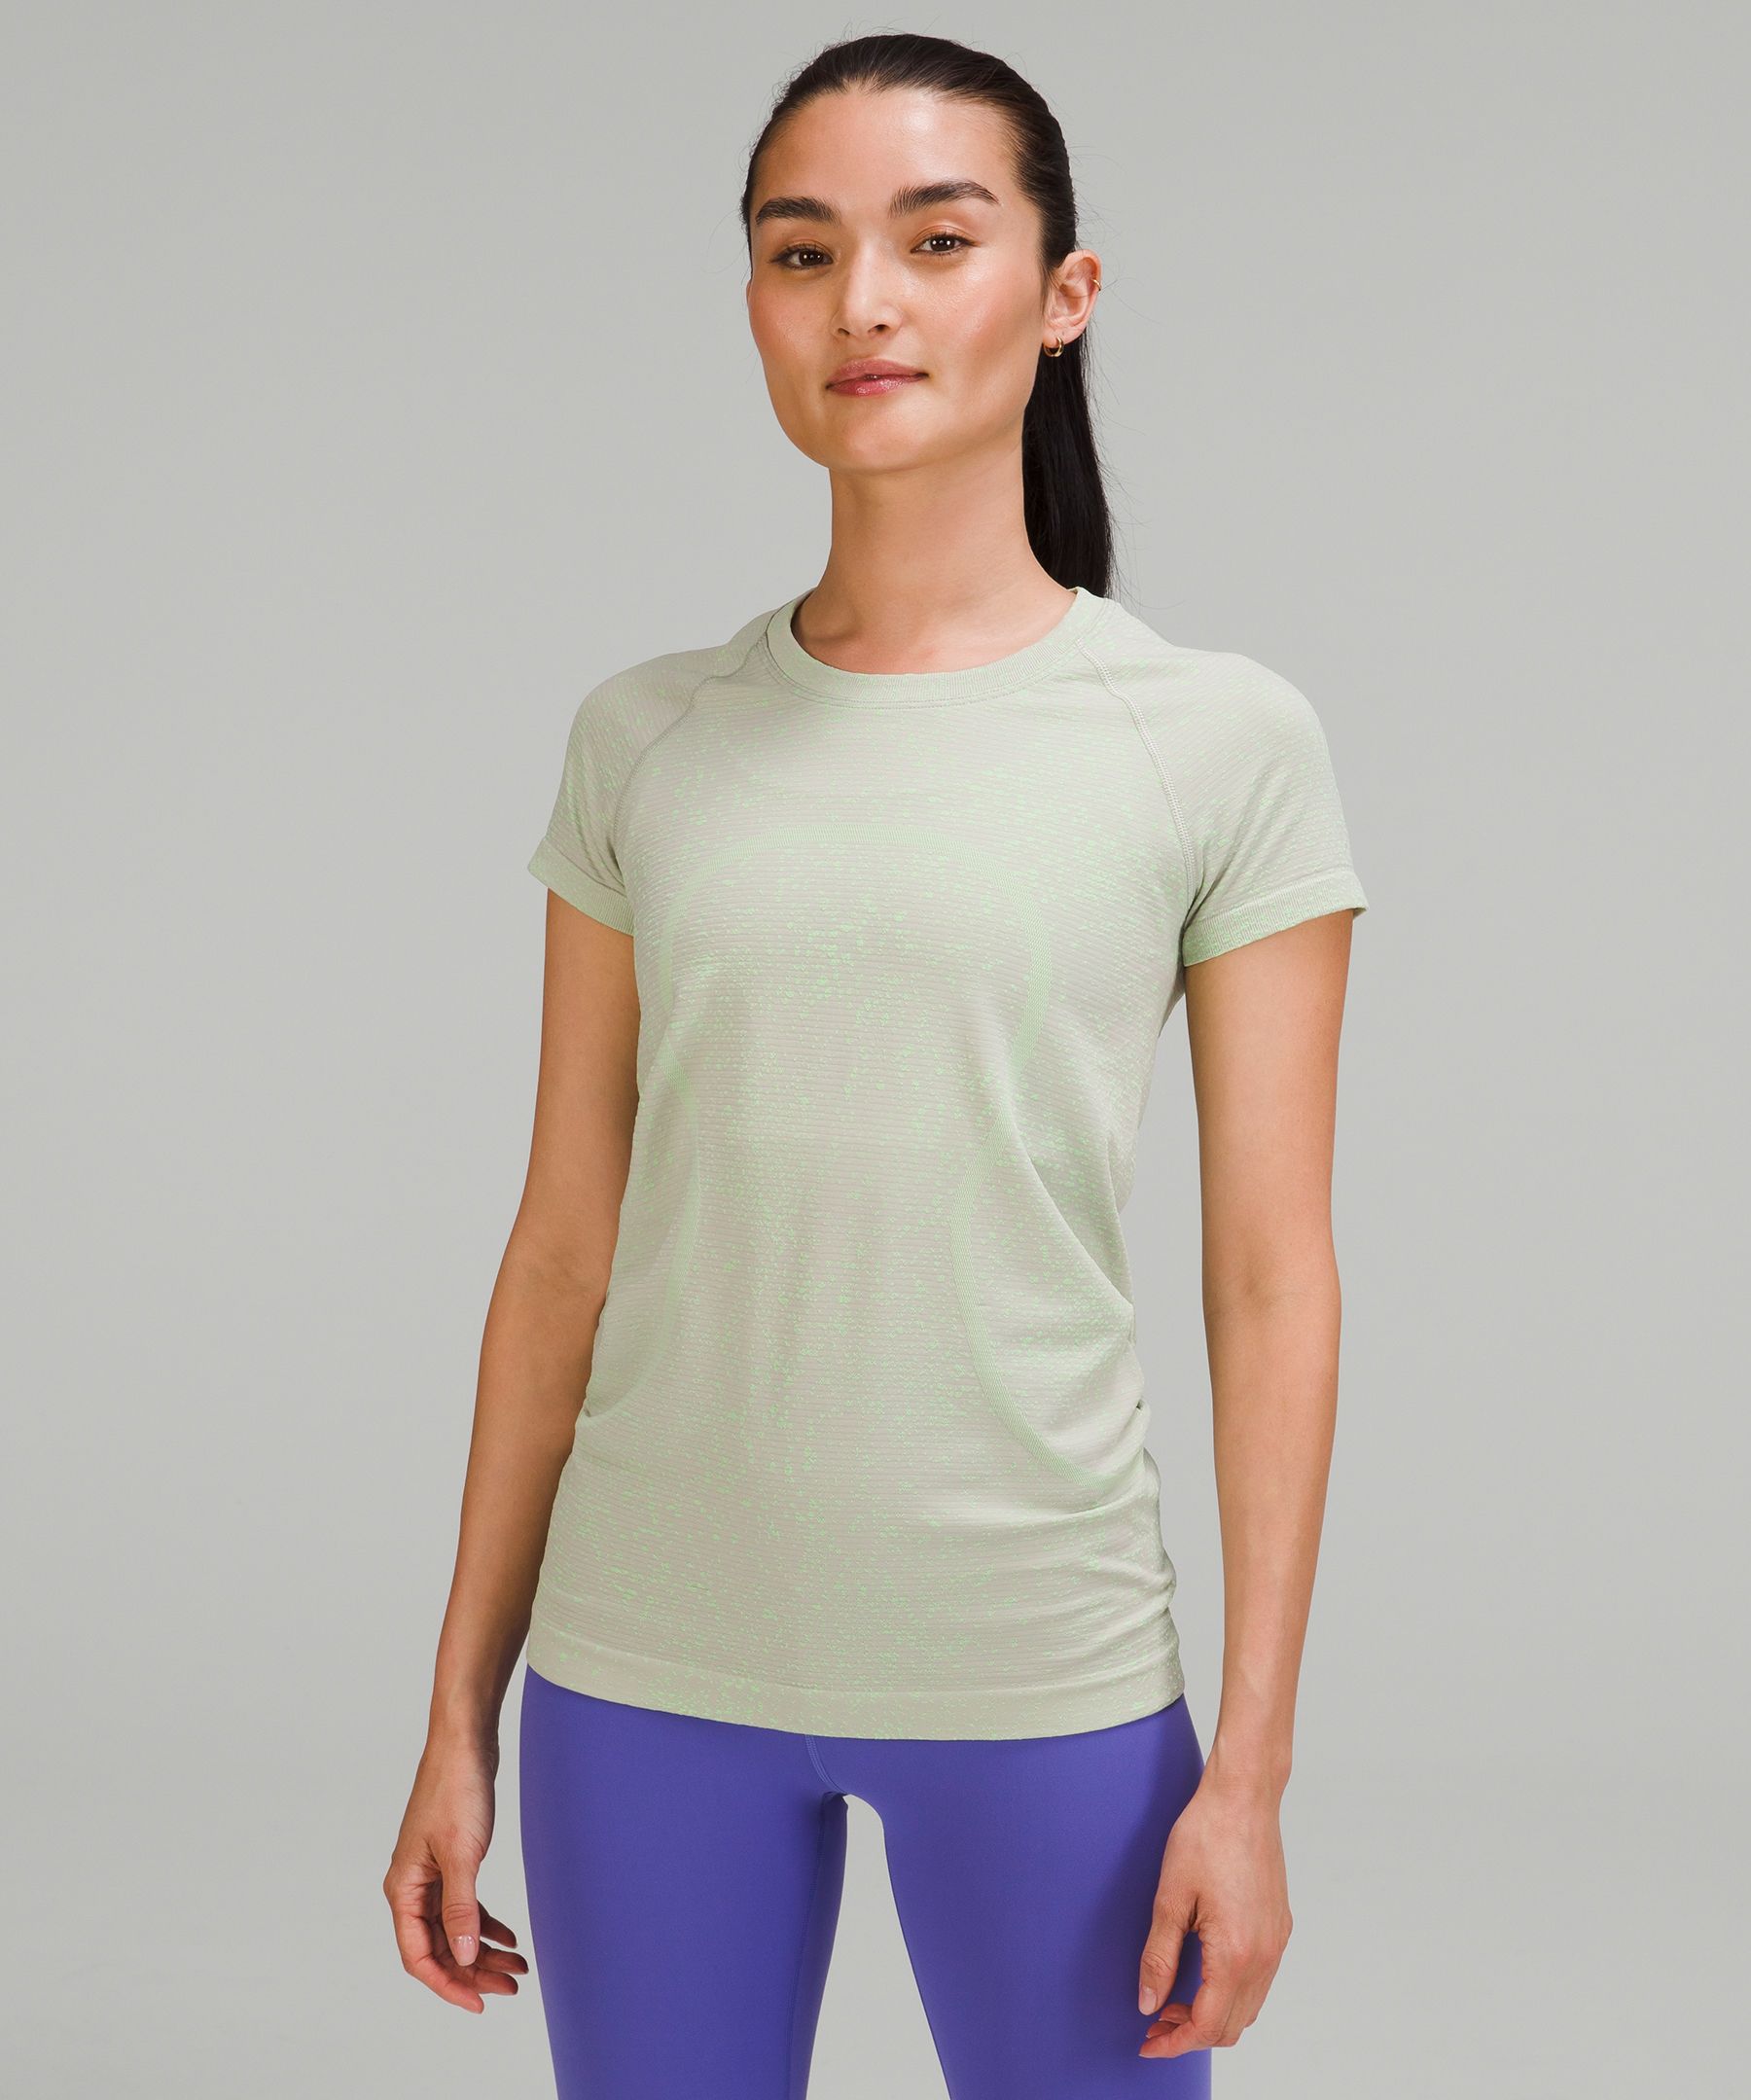 Lululemon Swiftly Tech Short Sleeve Shirt 2.0 In Distorted Noise Neon Chrome/scream Green Light